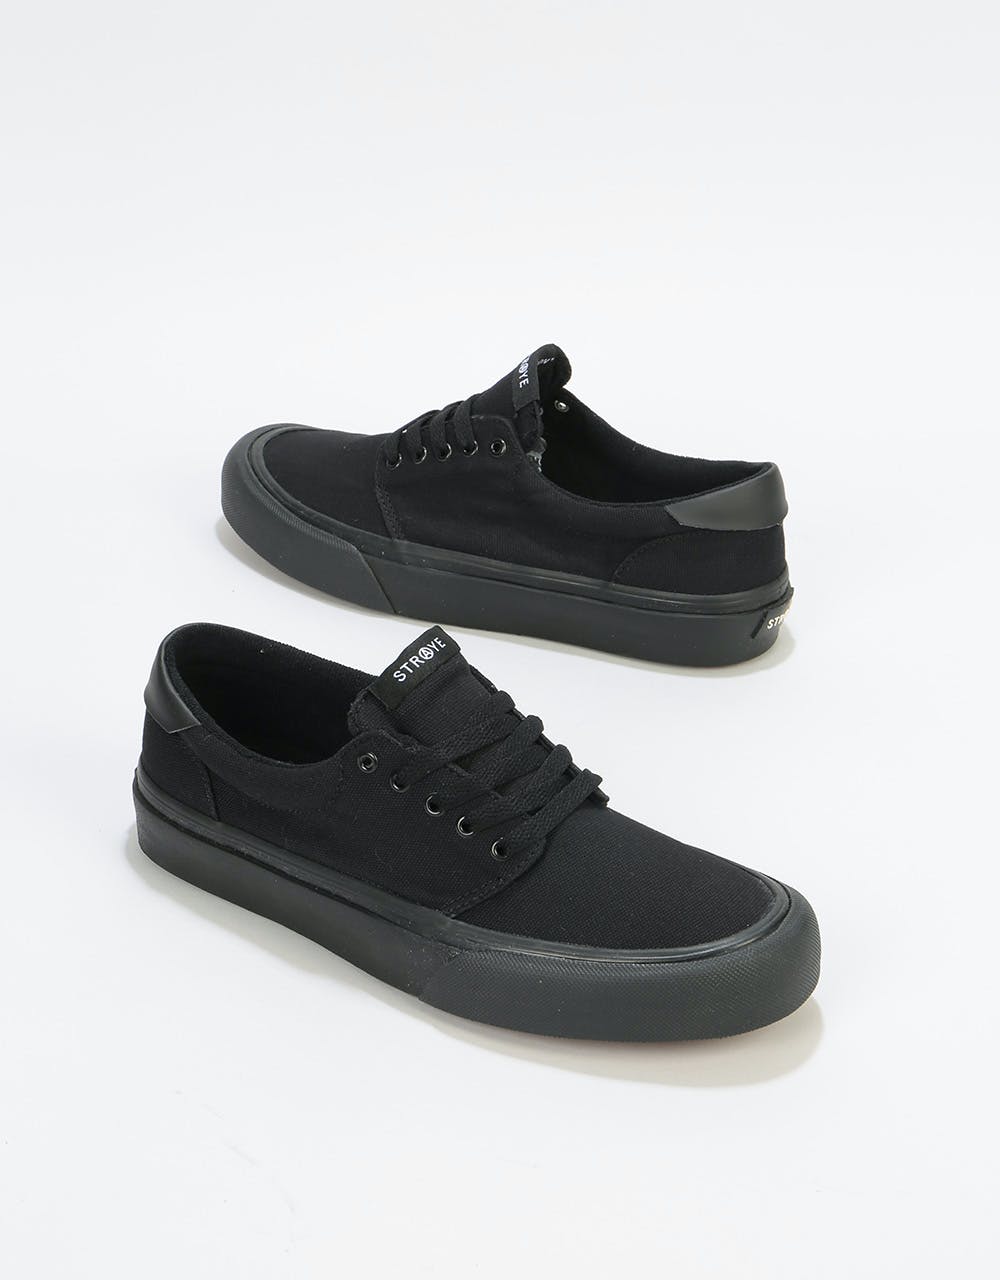 Straye Fairfax Skate Shoes - Black/Black Canvas